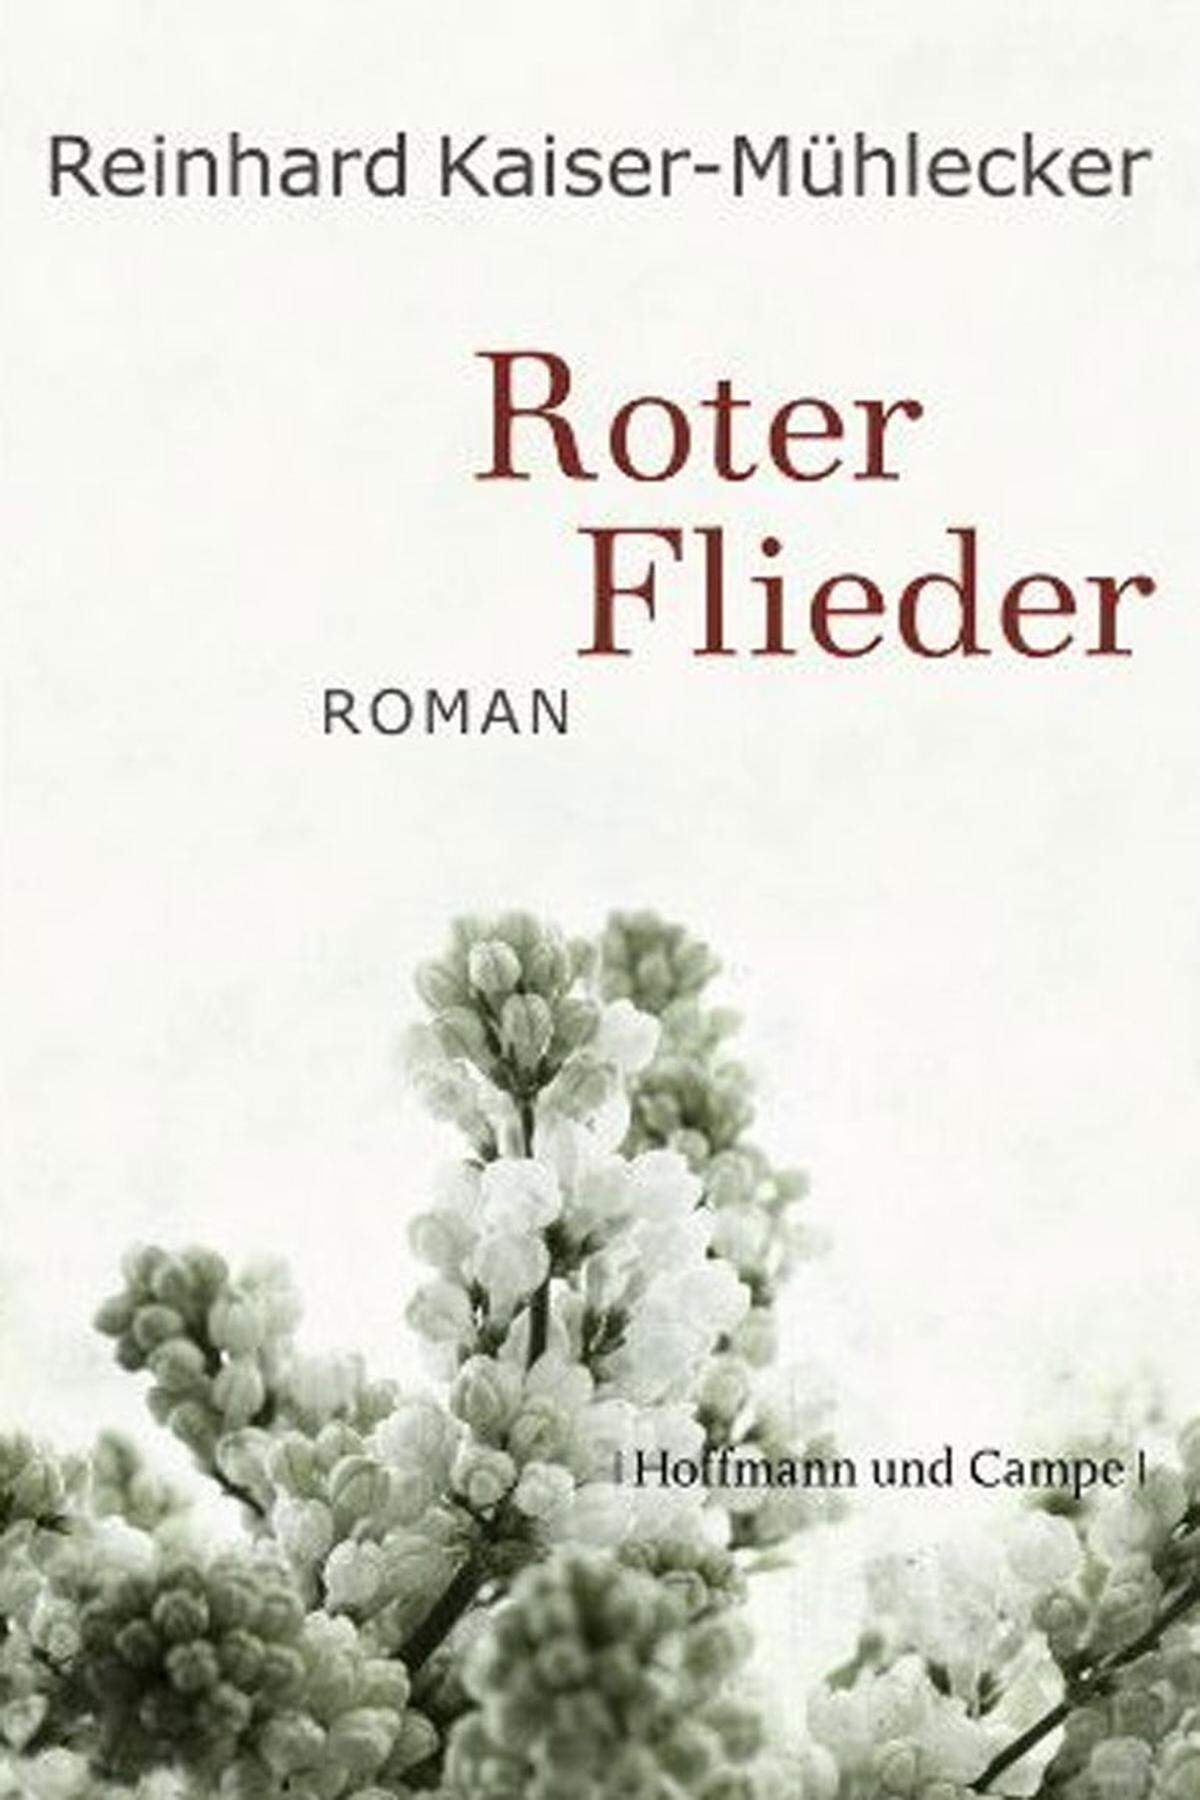 Hoffmann &amp; Campe bringt im September auch Reinhard Kaiser-Mühleckers vierten Roman "Roter Flieder", angekündigt als ein "gewaltiger Roman, geformt aus der Geschichte des zwanzigsten Jahrhunderts, seinen Hoffnungen und Wirren".